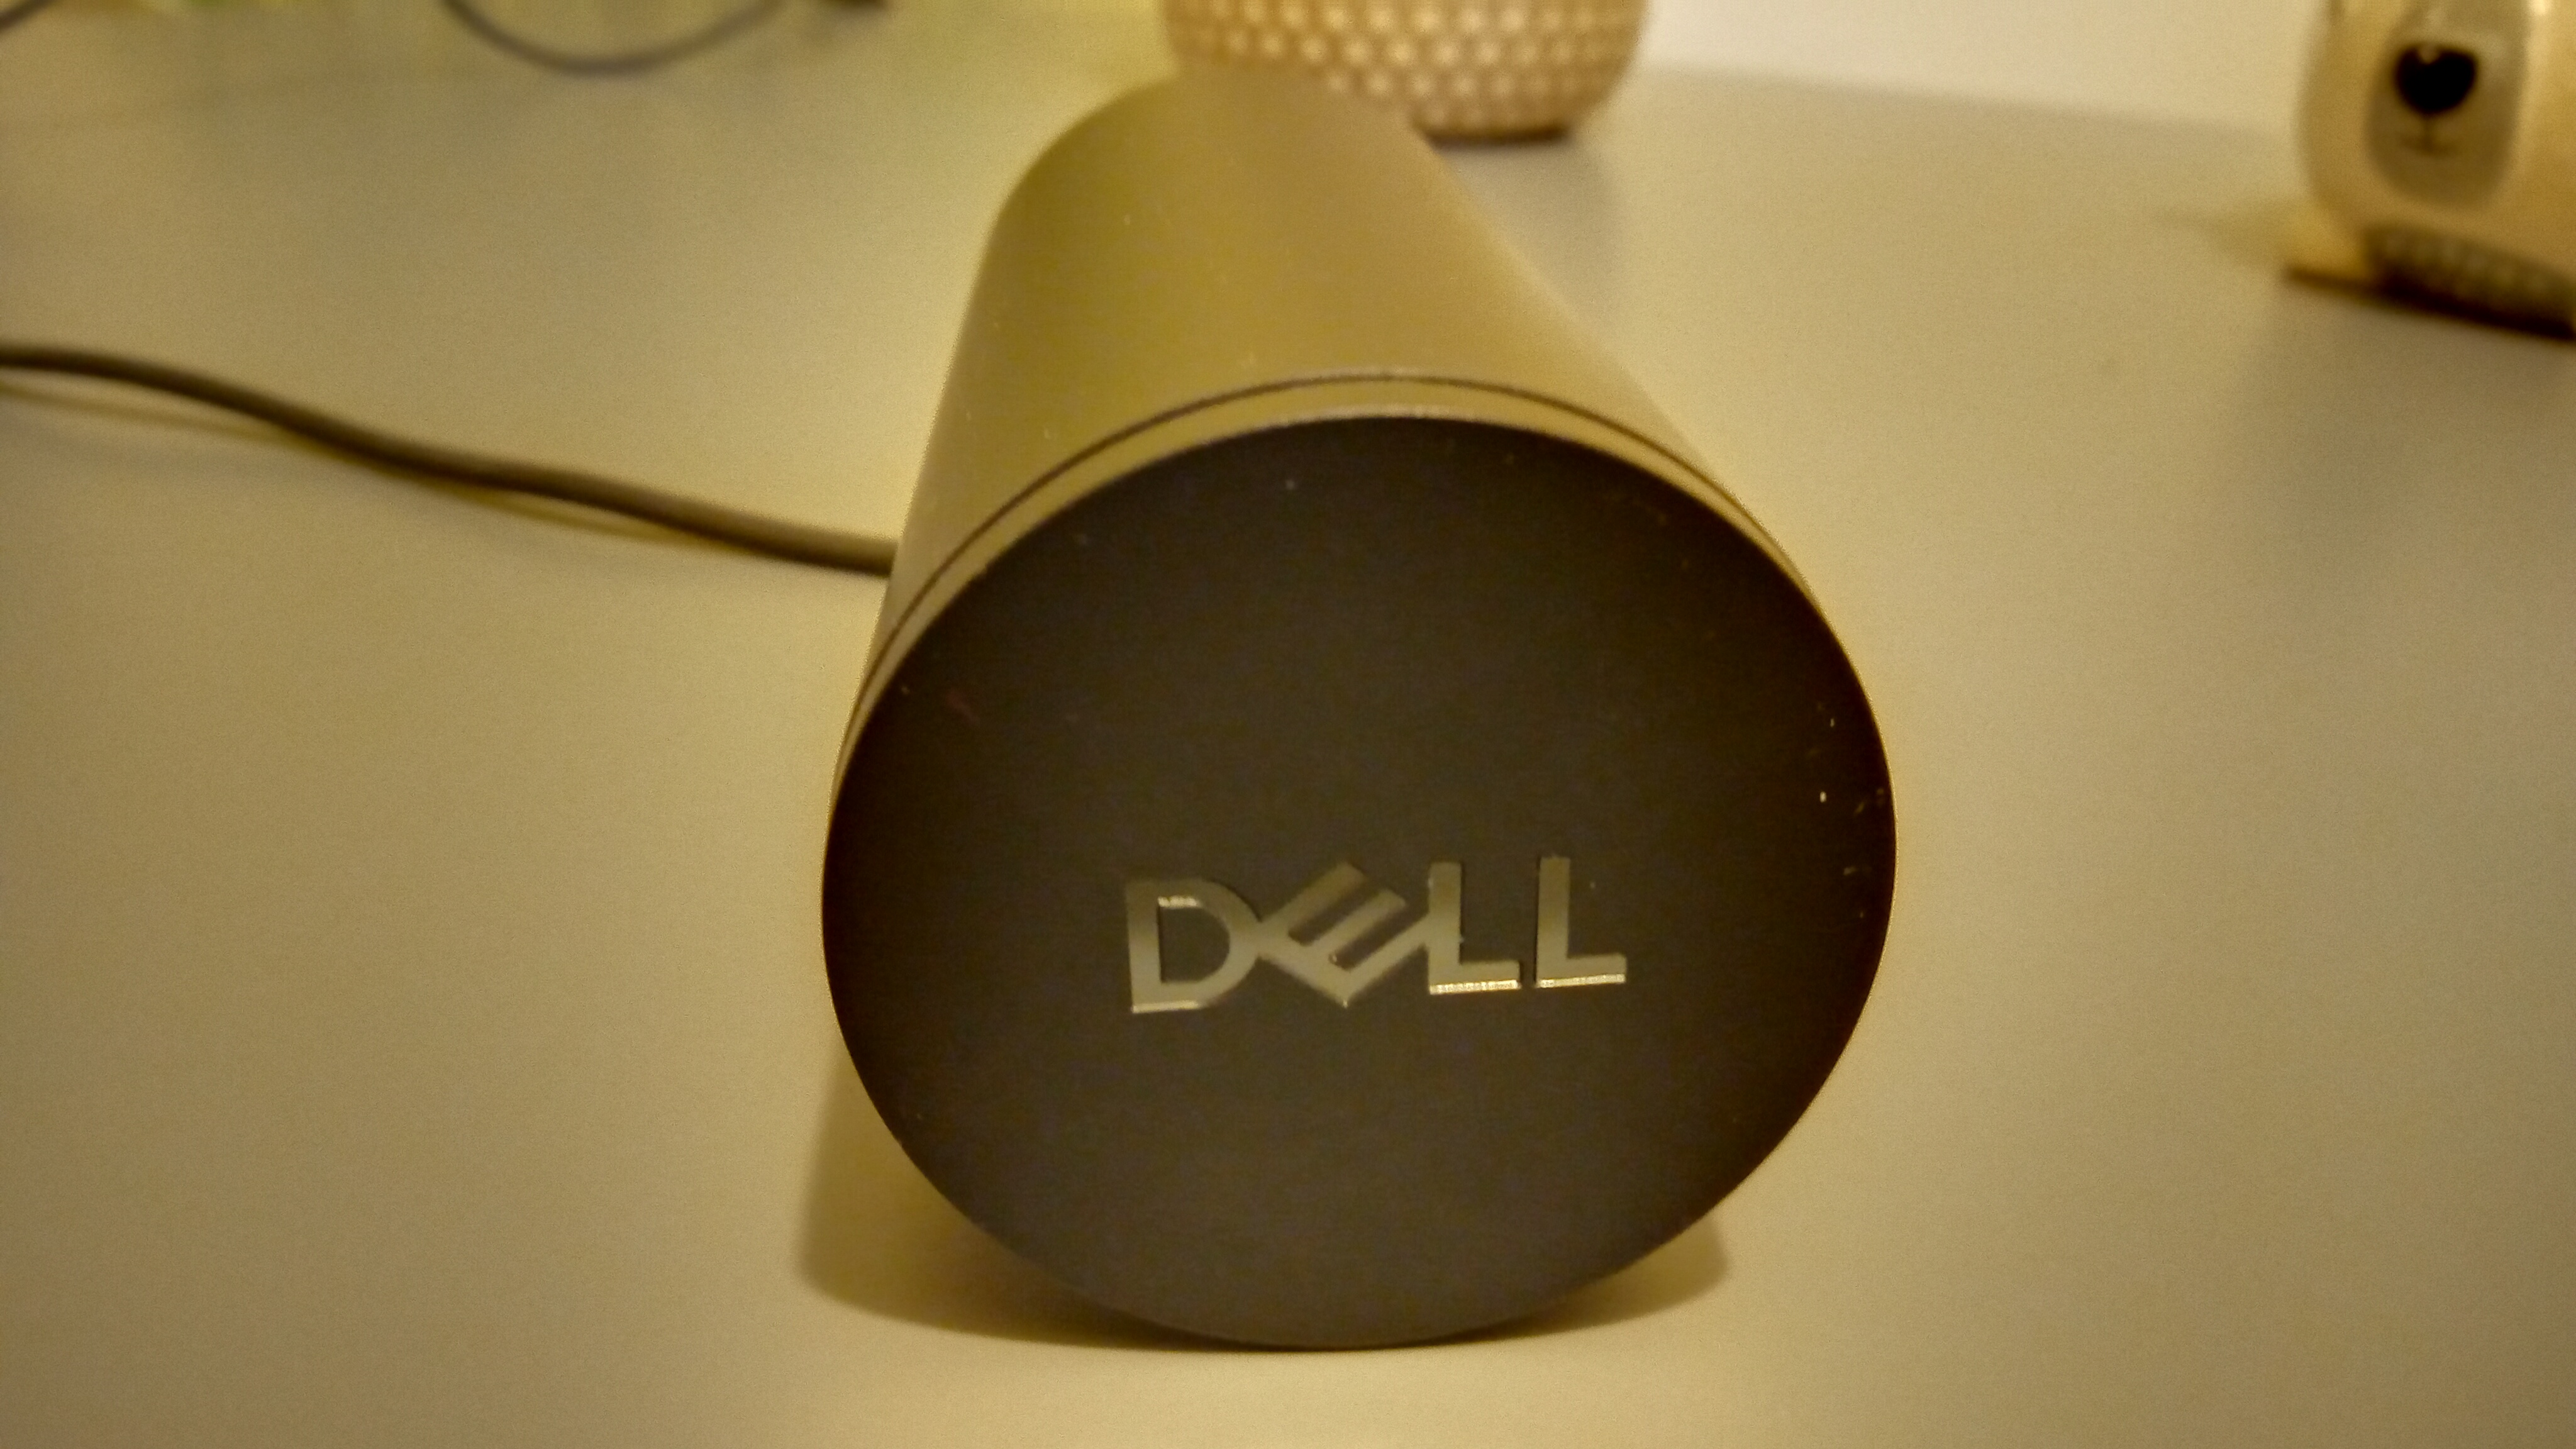 Une webcam Dell Pro noire posée sur une table grise et montée sur un ordinateur portable.